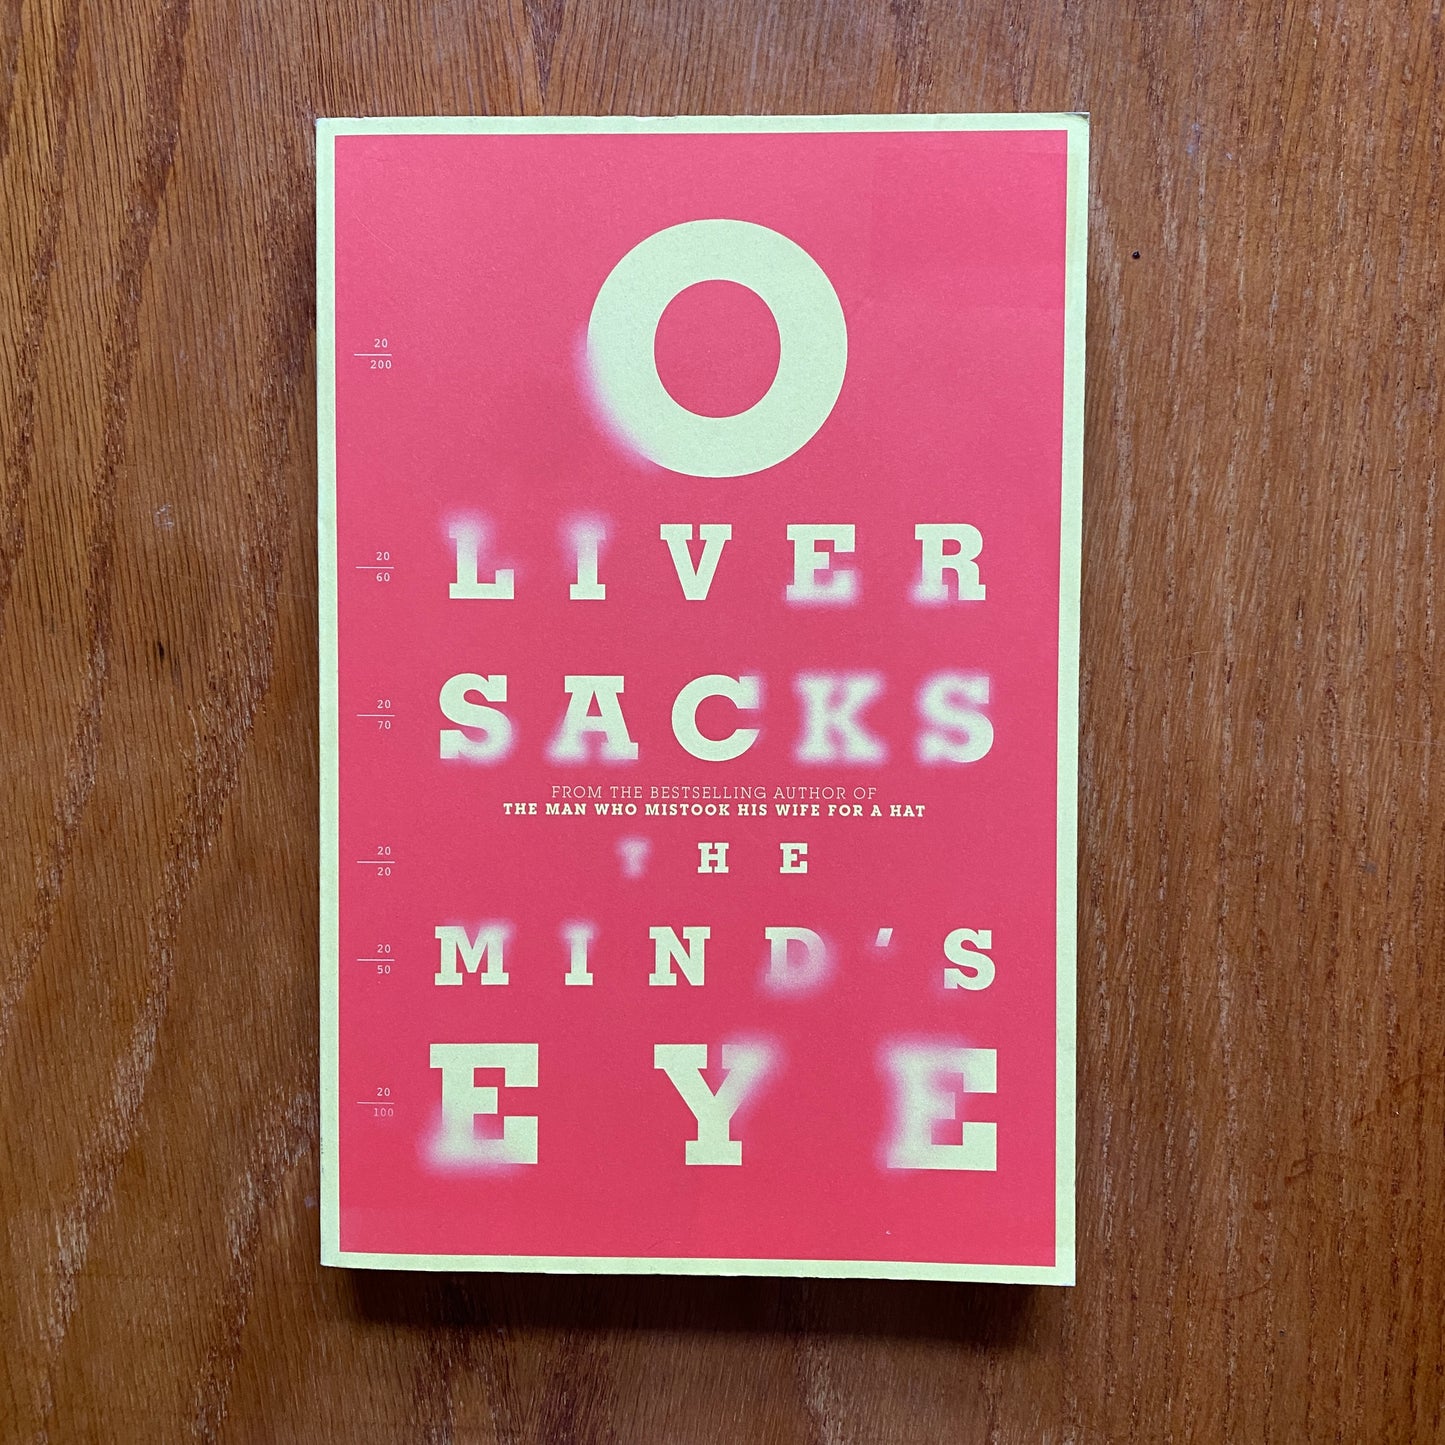 The Minds Eye - Oliver Sacks